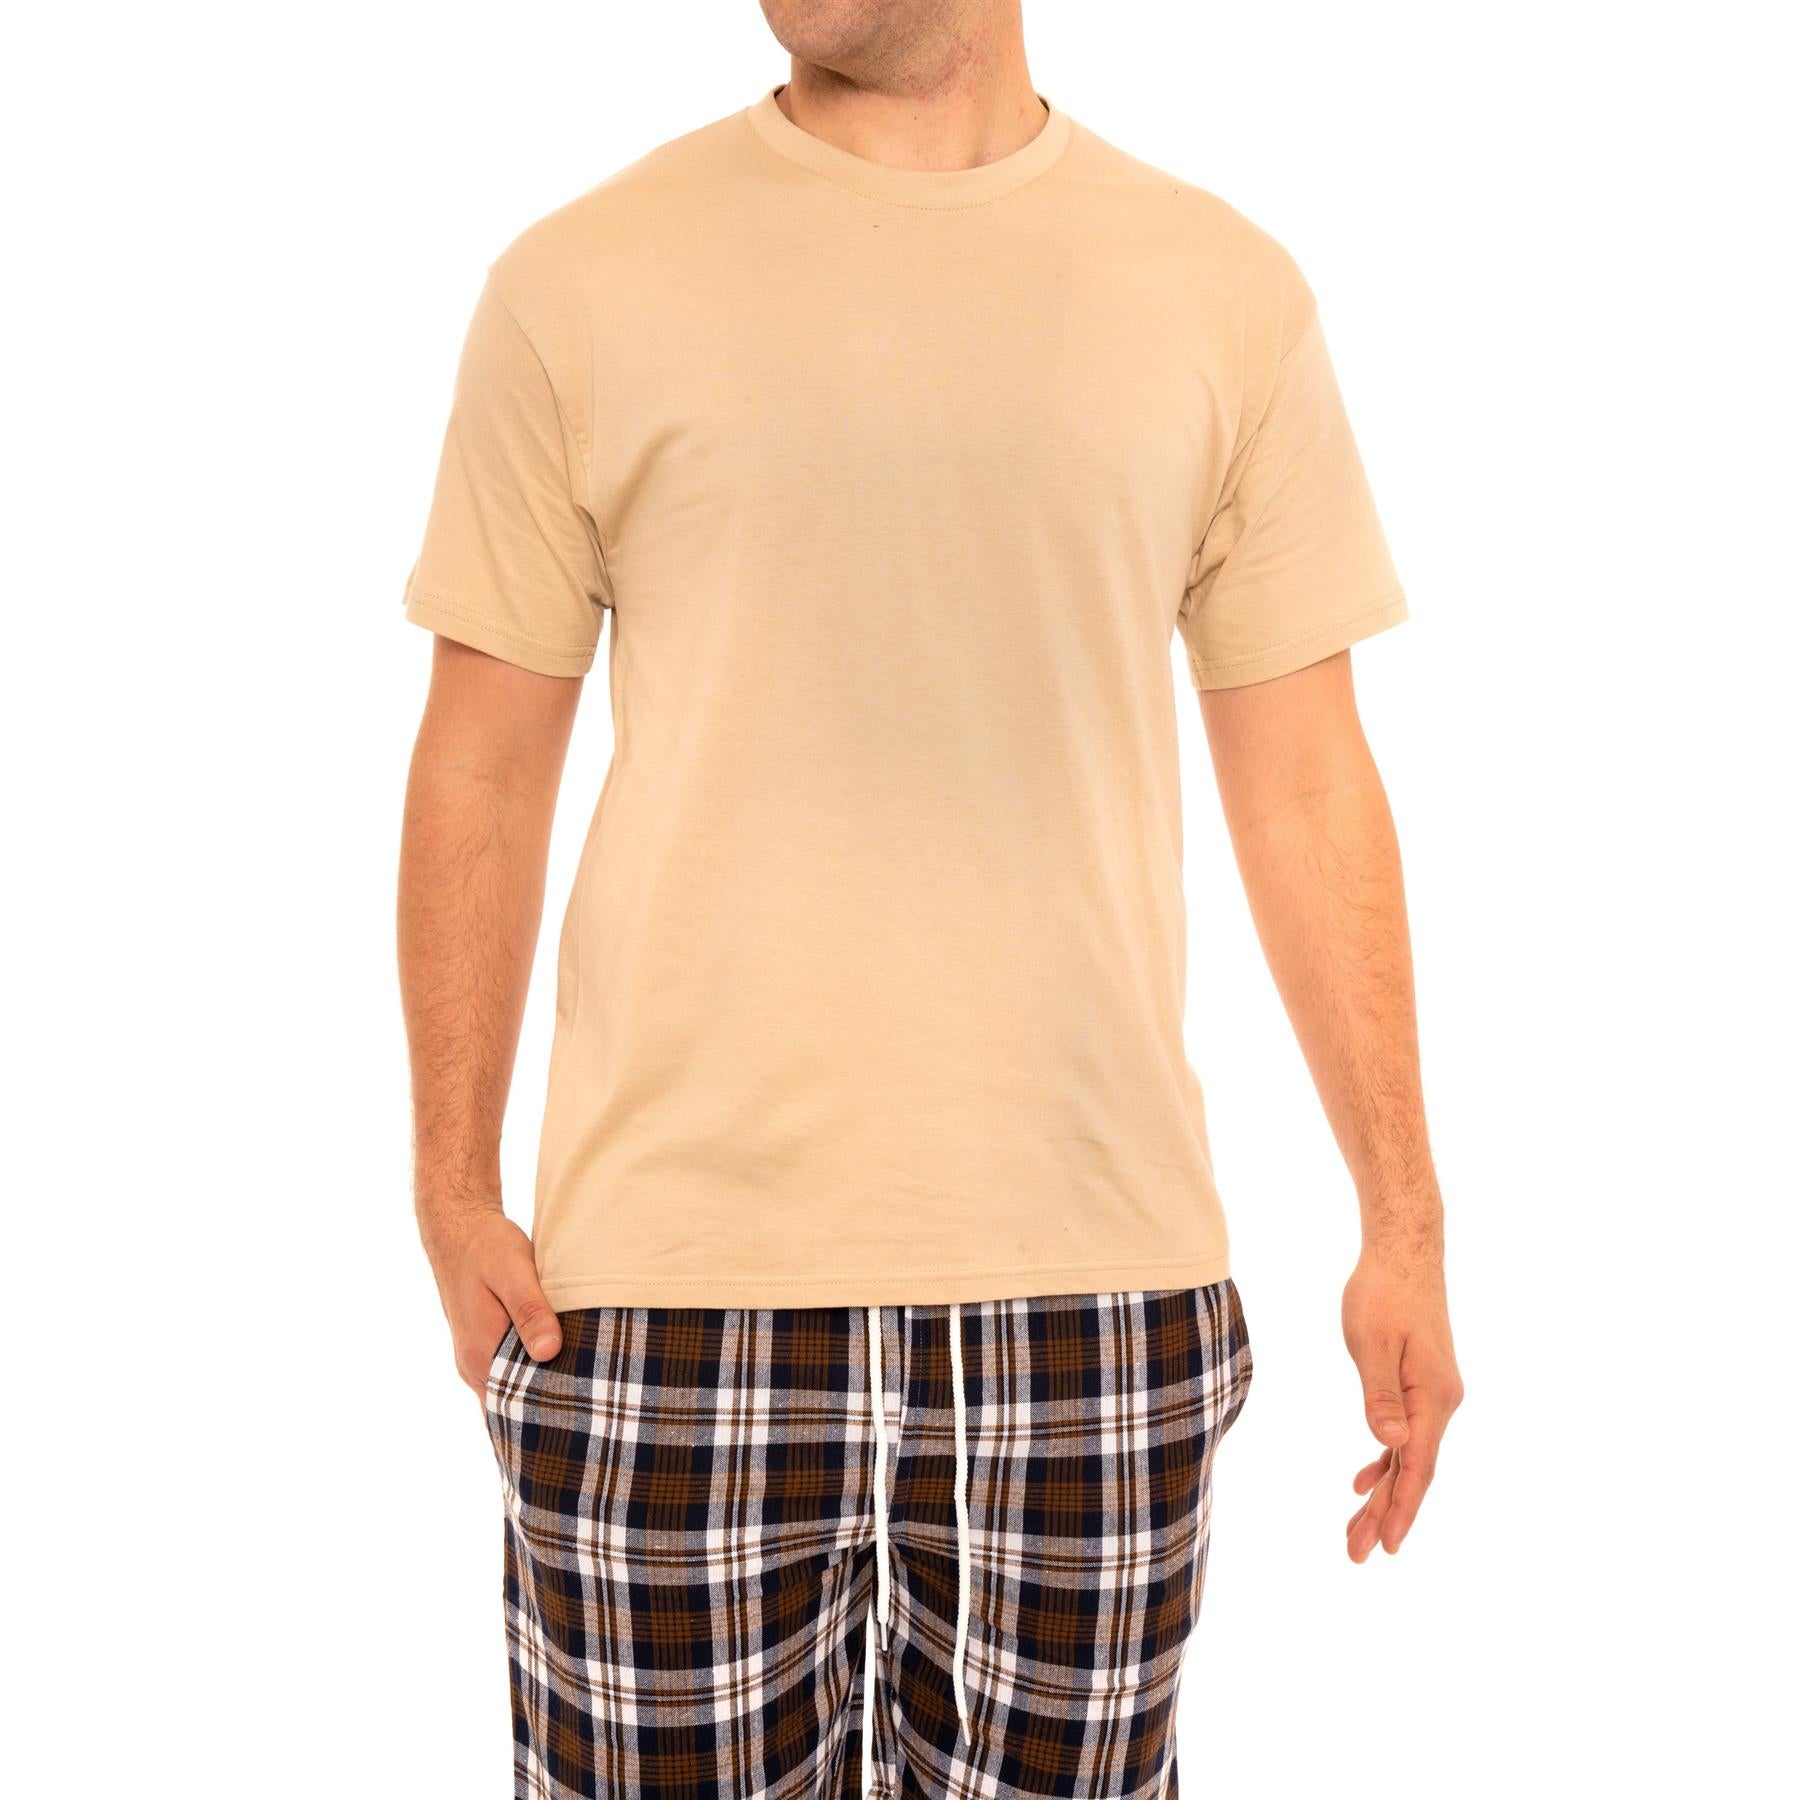 Woven Checked Shorts Pyjamas